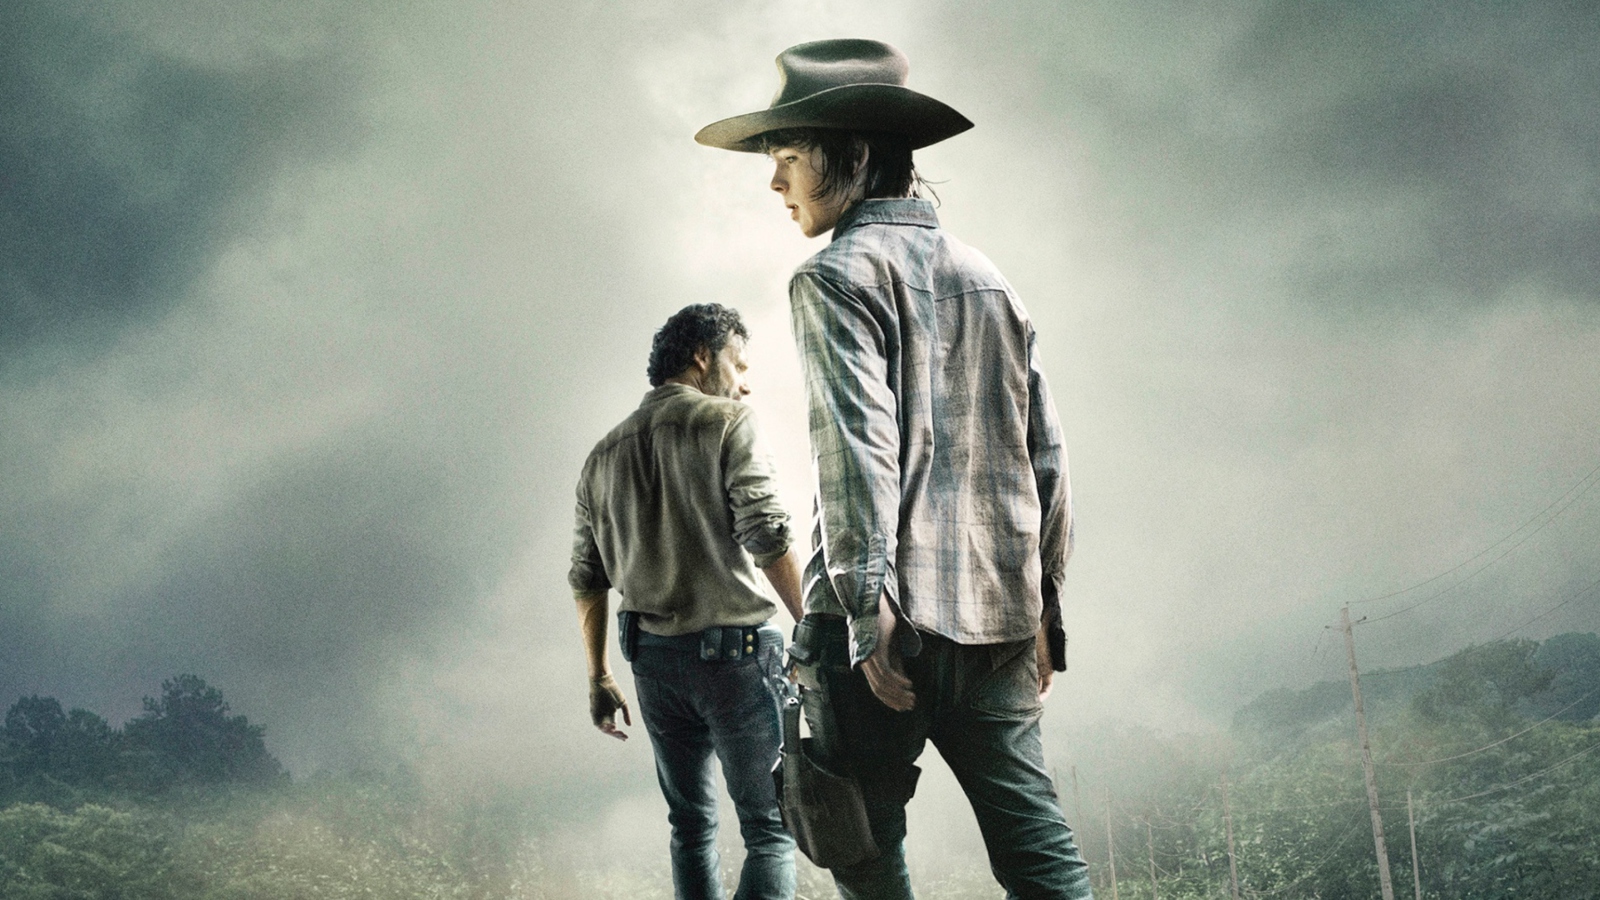 The Walking Dead 2014 wallpaper 1600x900